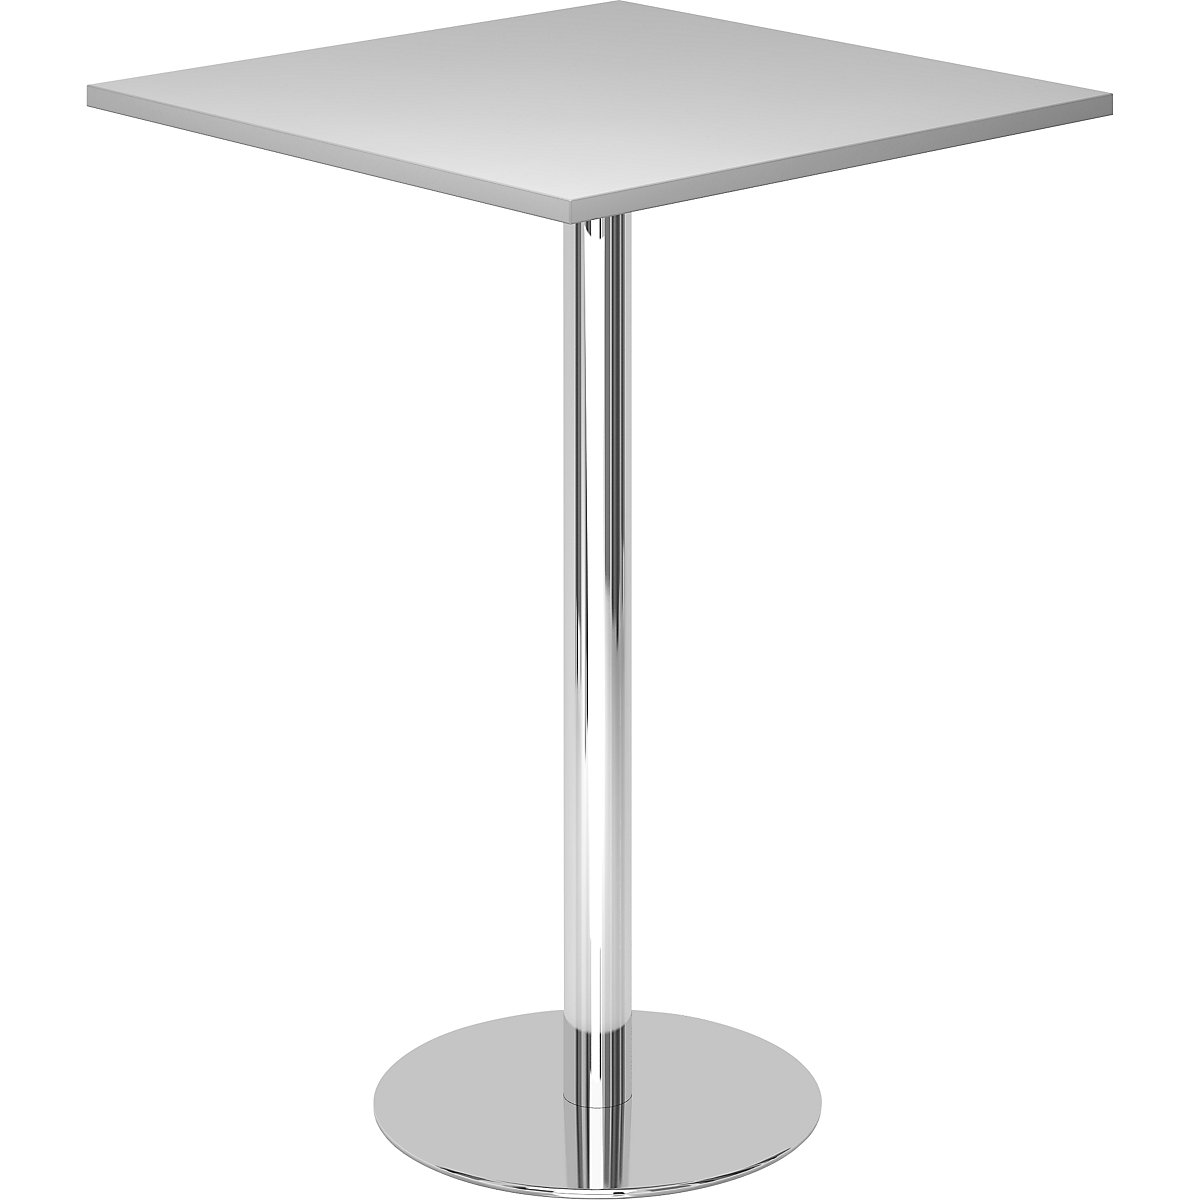 Állóasztal, h x szé 800 x 800 mm, 1116 mm magas, krómozott váz, világosszürke asztallap